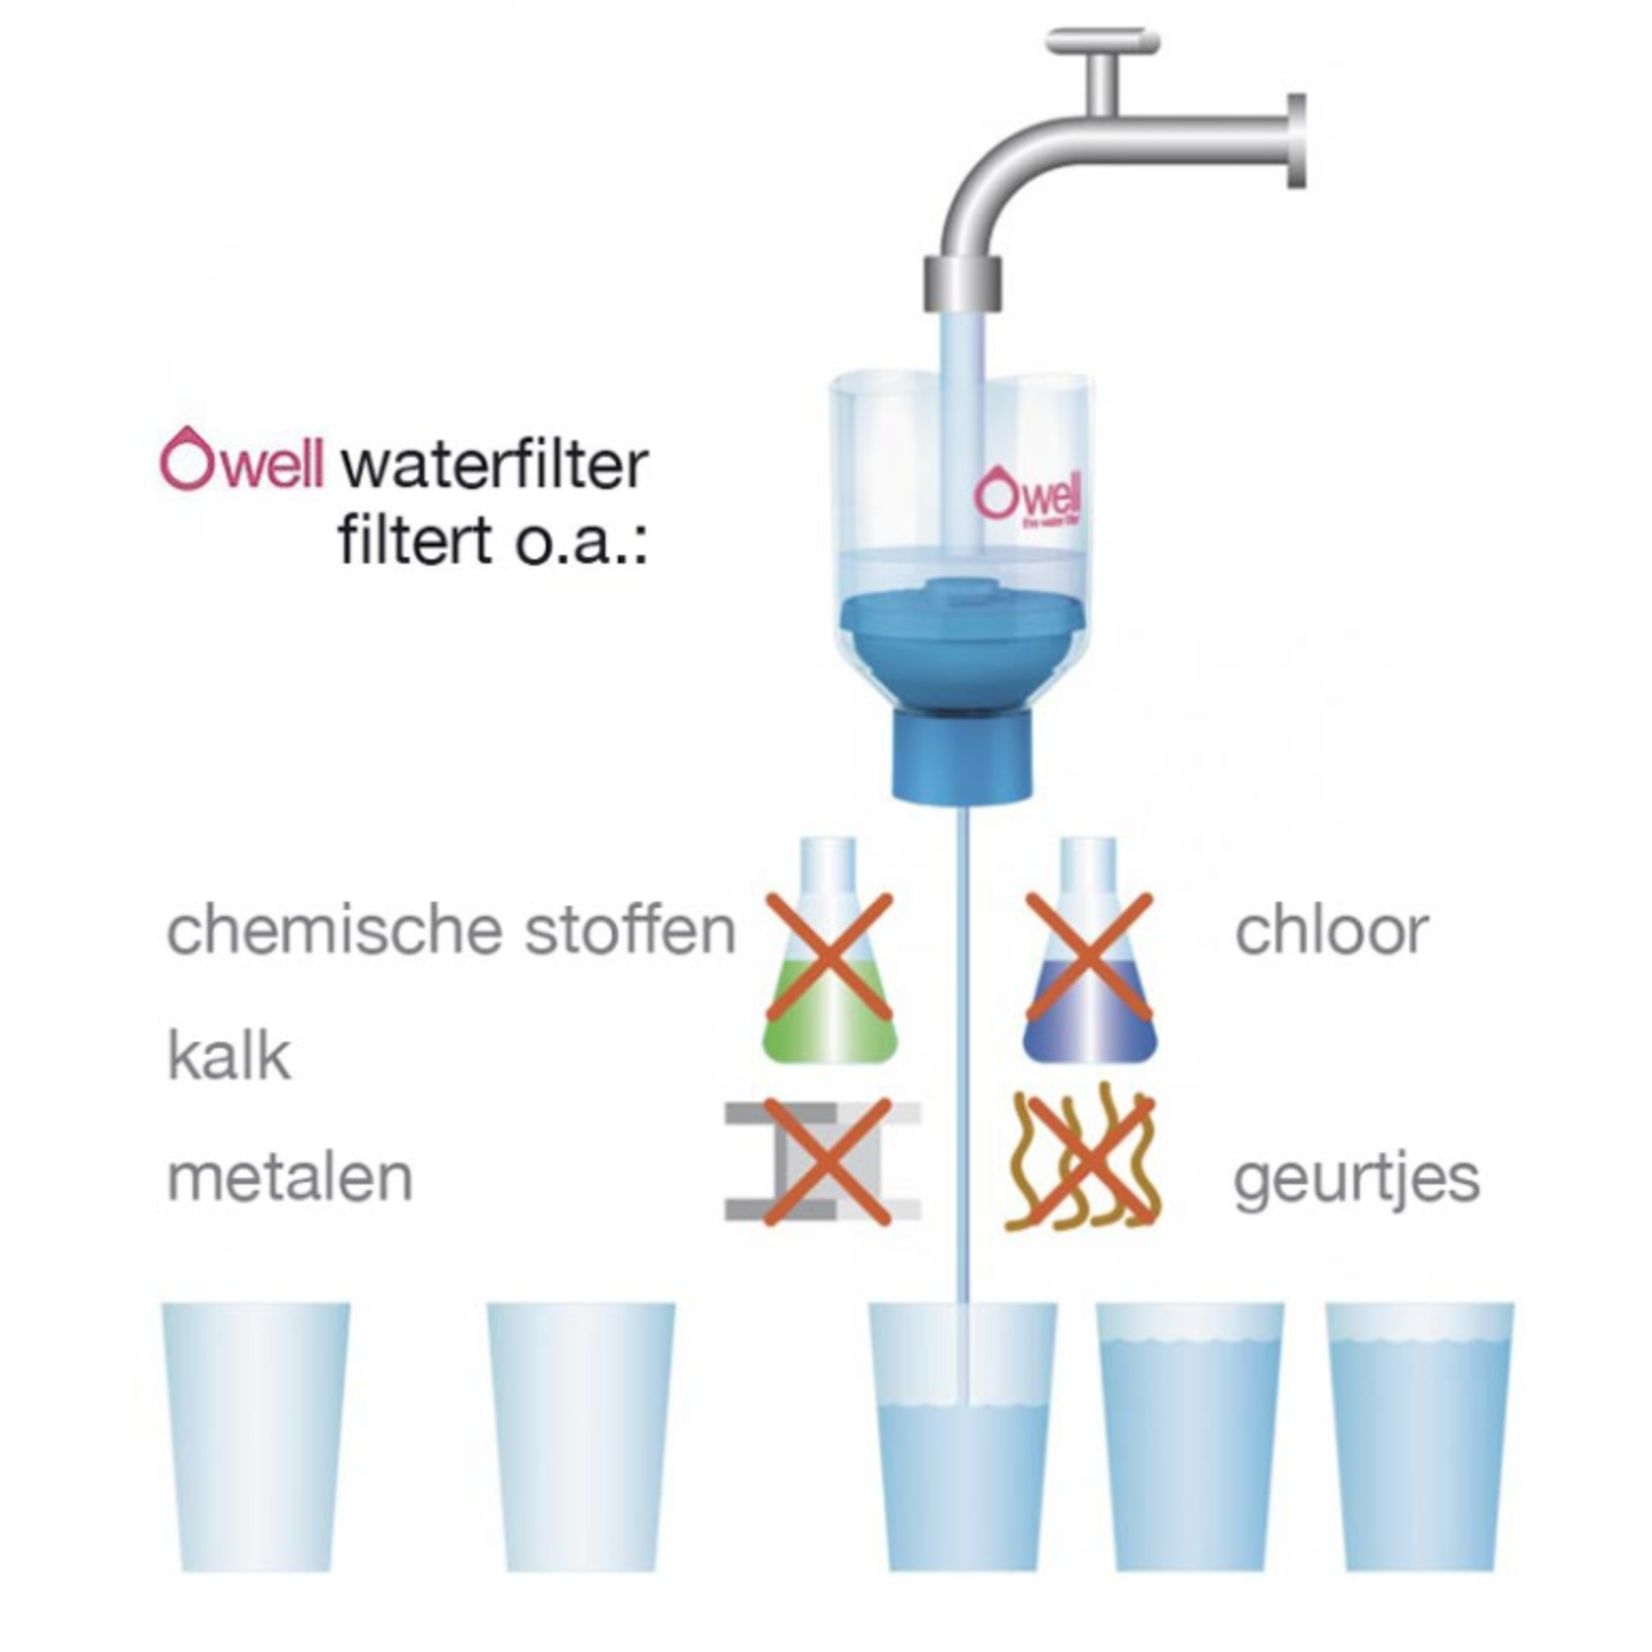 Owel waterfilter